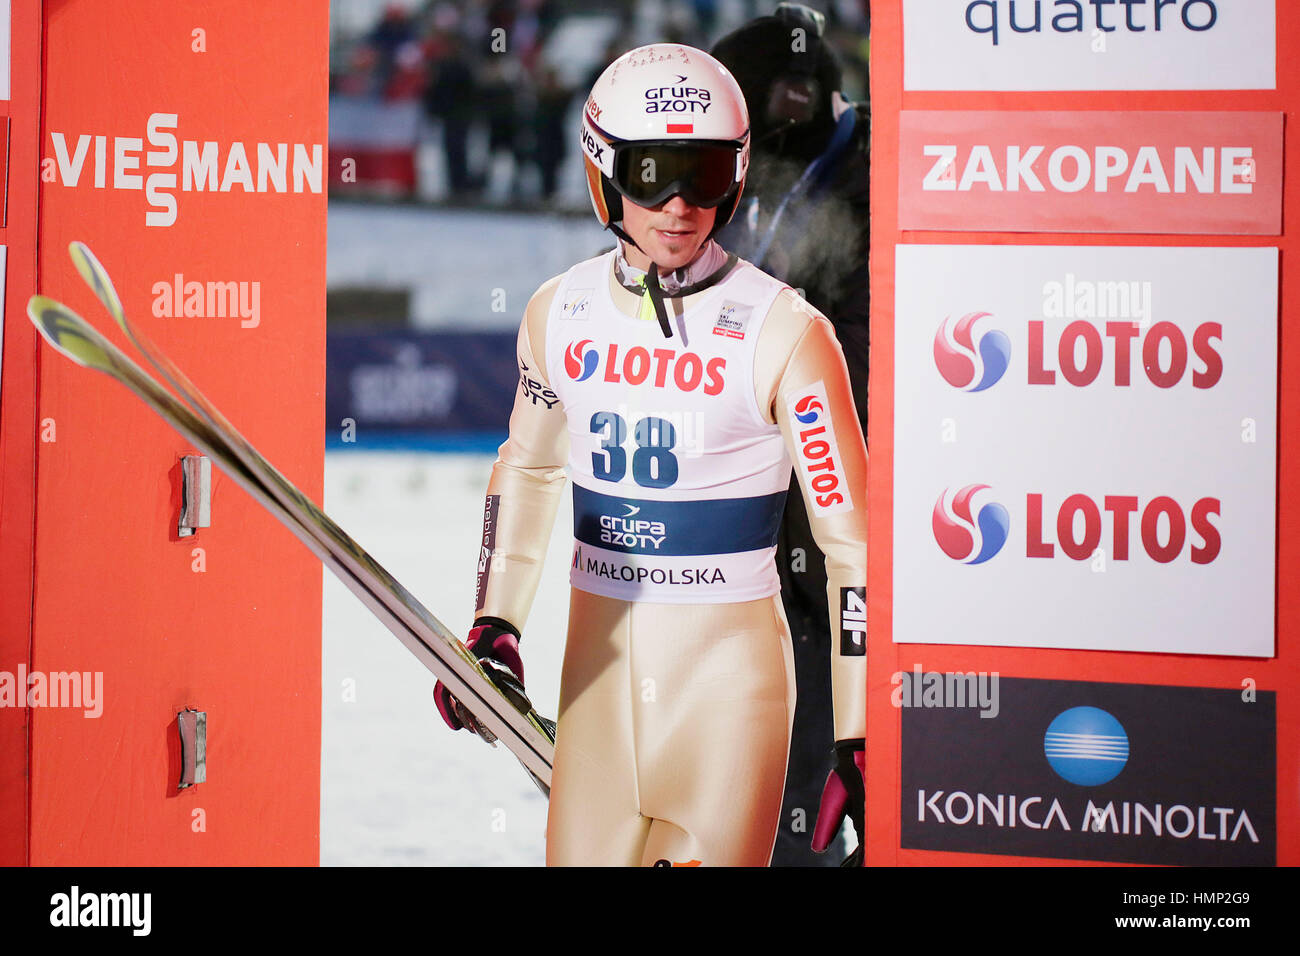 ZAKOPANE, POLAND - JANUARY 22, 2016: FIS Ski Jumping World Cup in Zakopane o/p Piotr Zyla POL Stock Photo